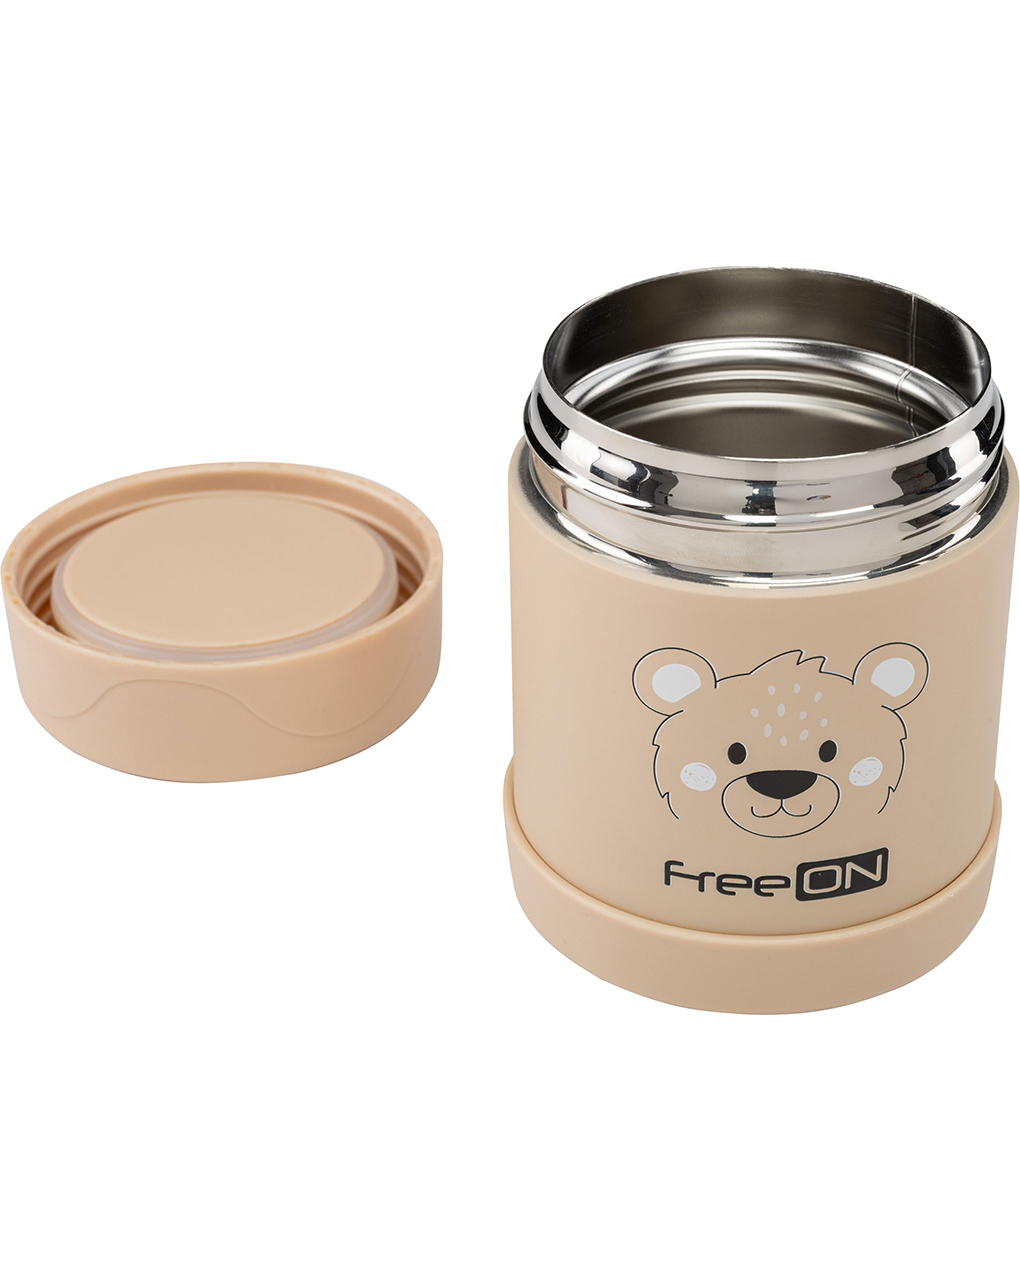 Freeon ανοξείδωτο θερμός φαγητού bear beige 350 ml 380739 - Freeon